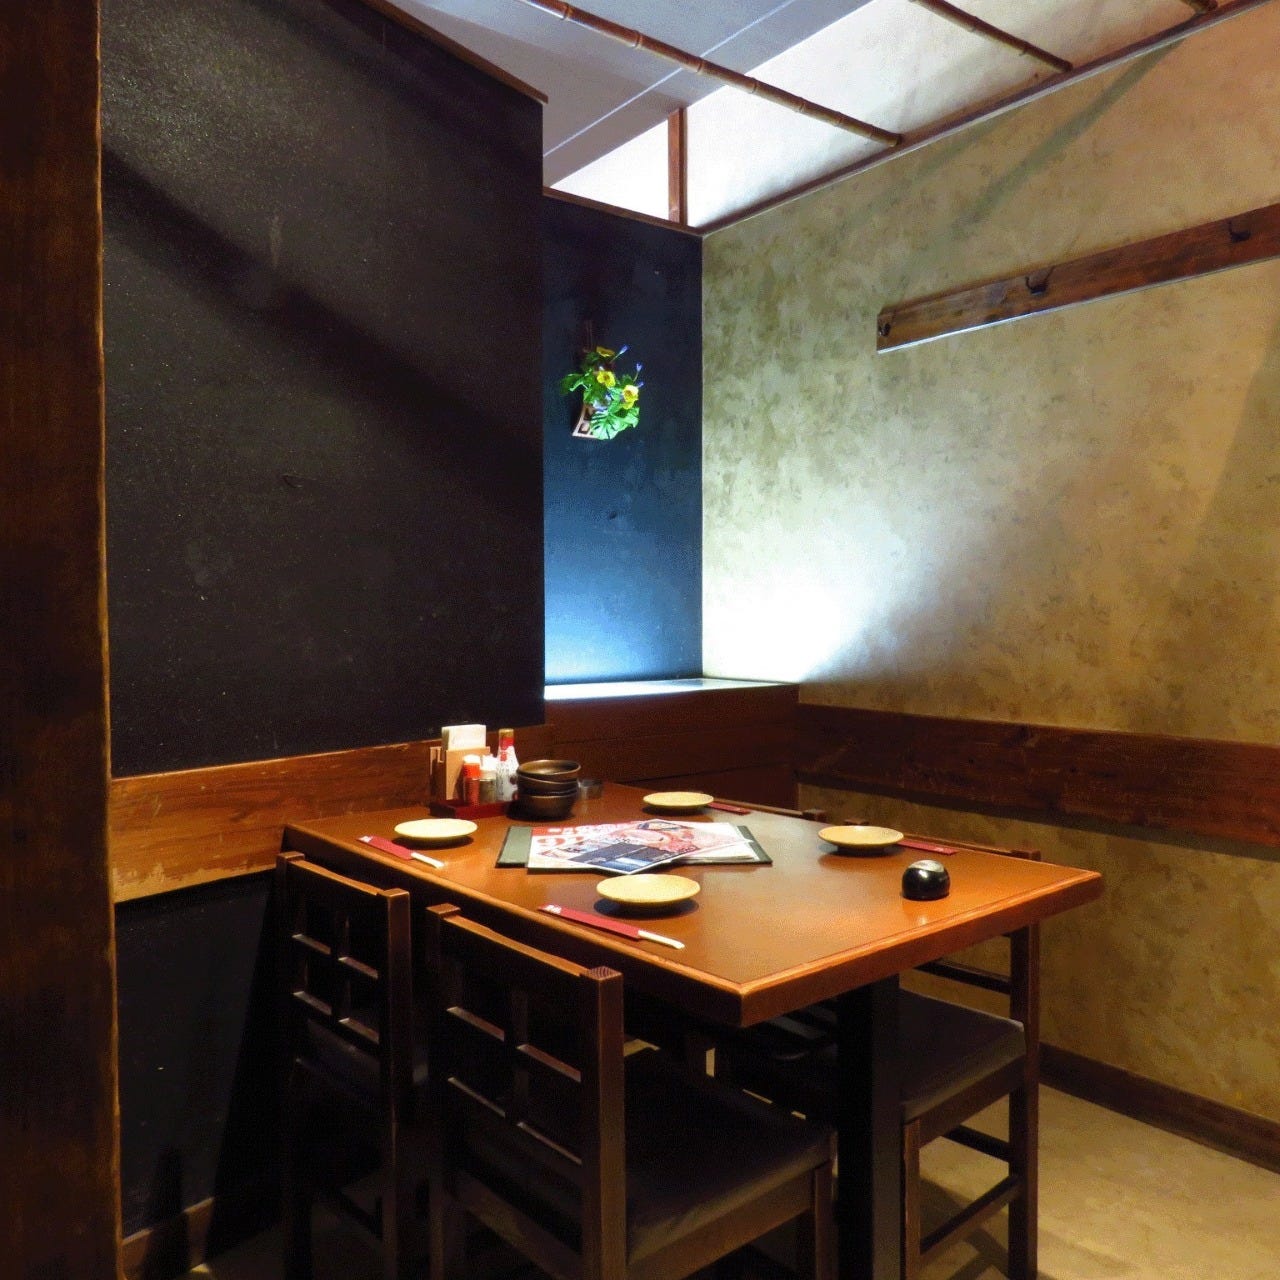 21年 最新グルメ 大井町にある個室でゆったりジンギスカンを楽しめるお店 レストラン カフェ 居酒屋のネット予約 東京版